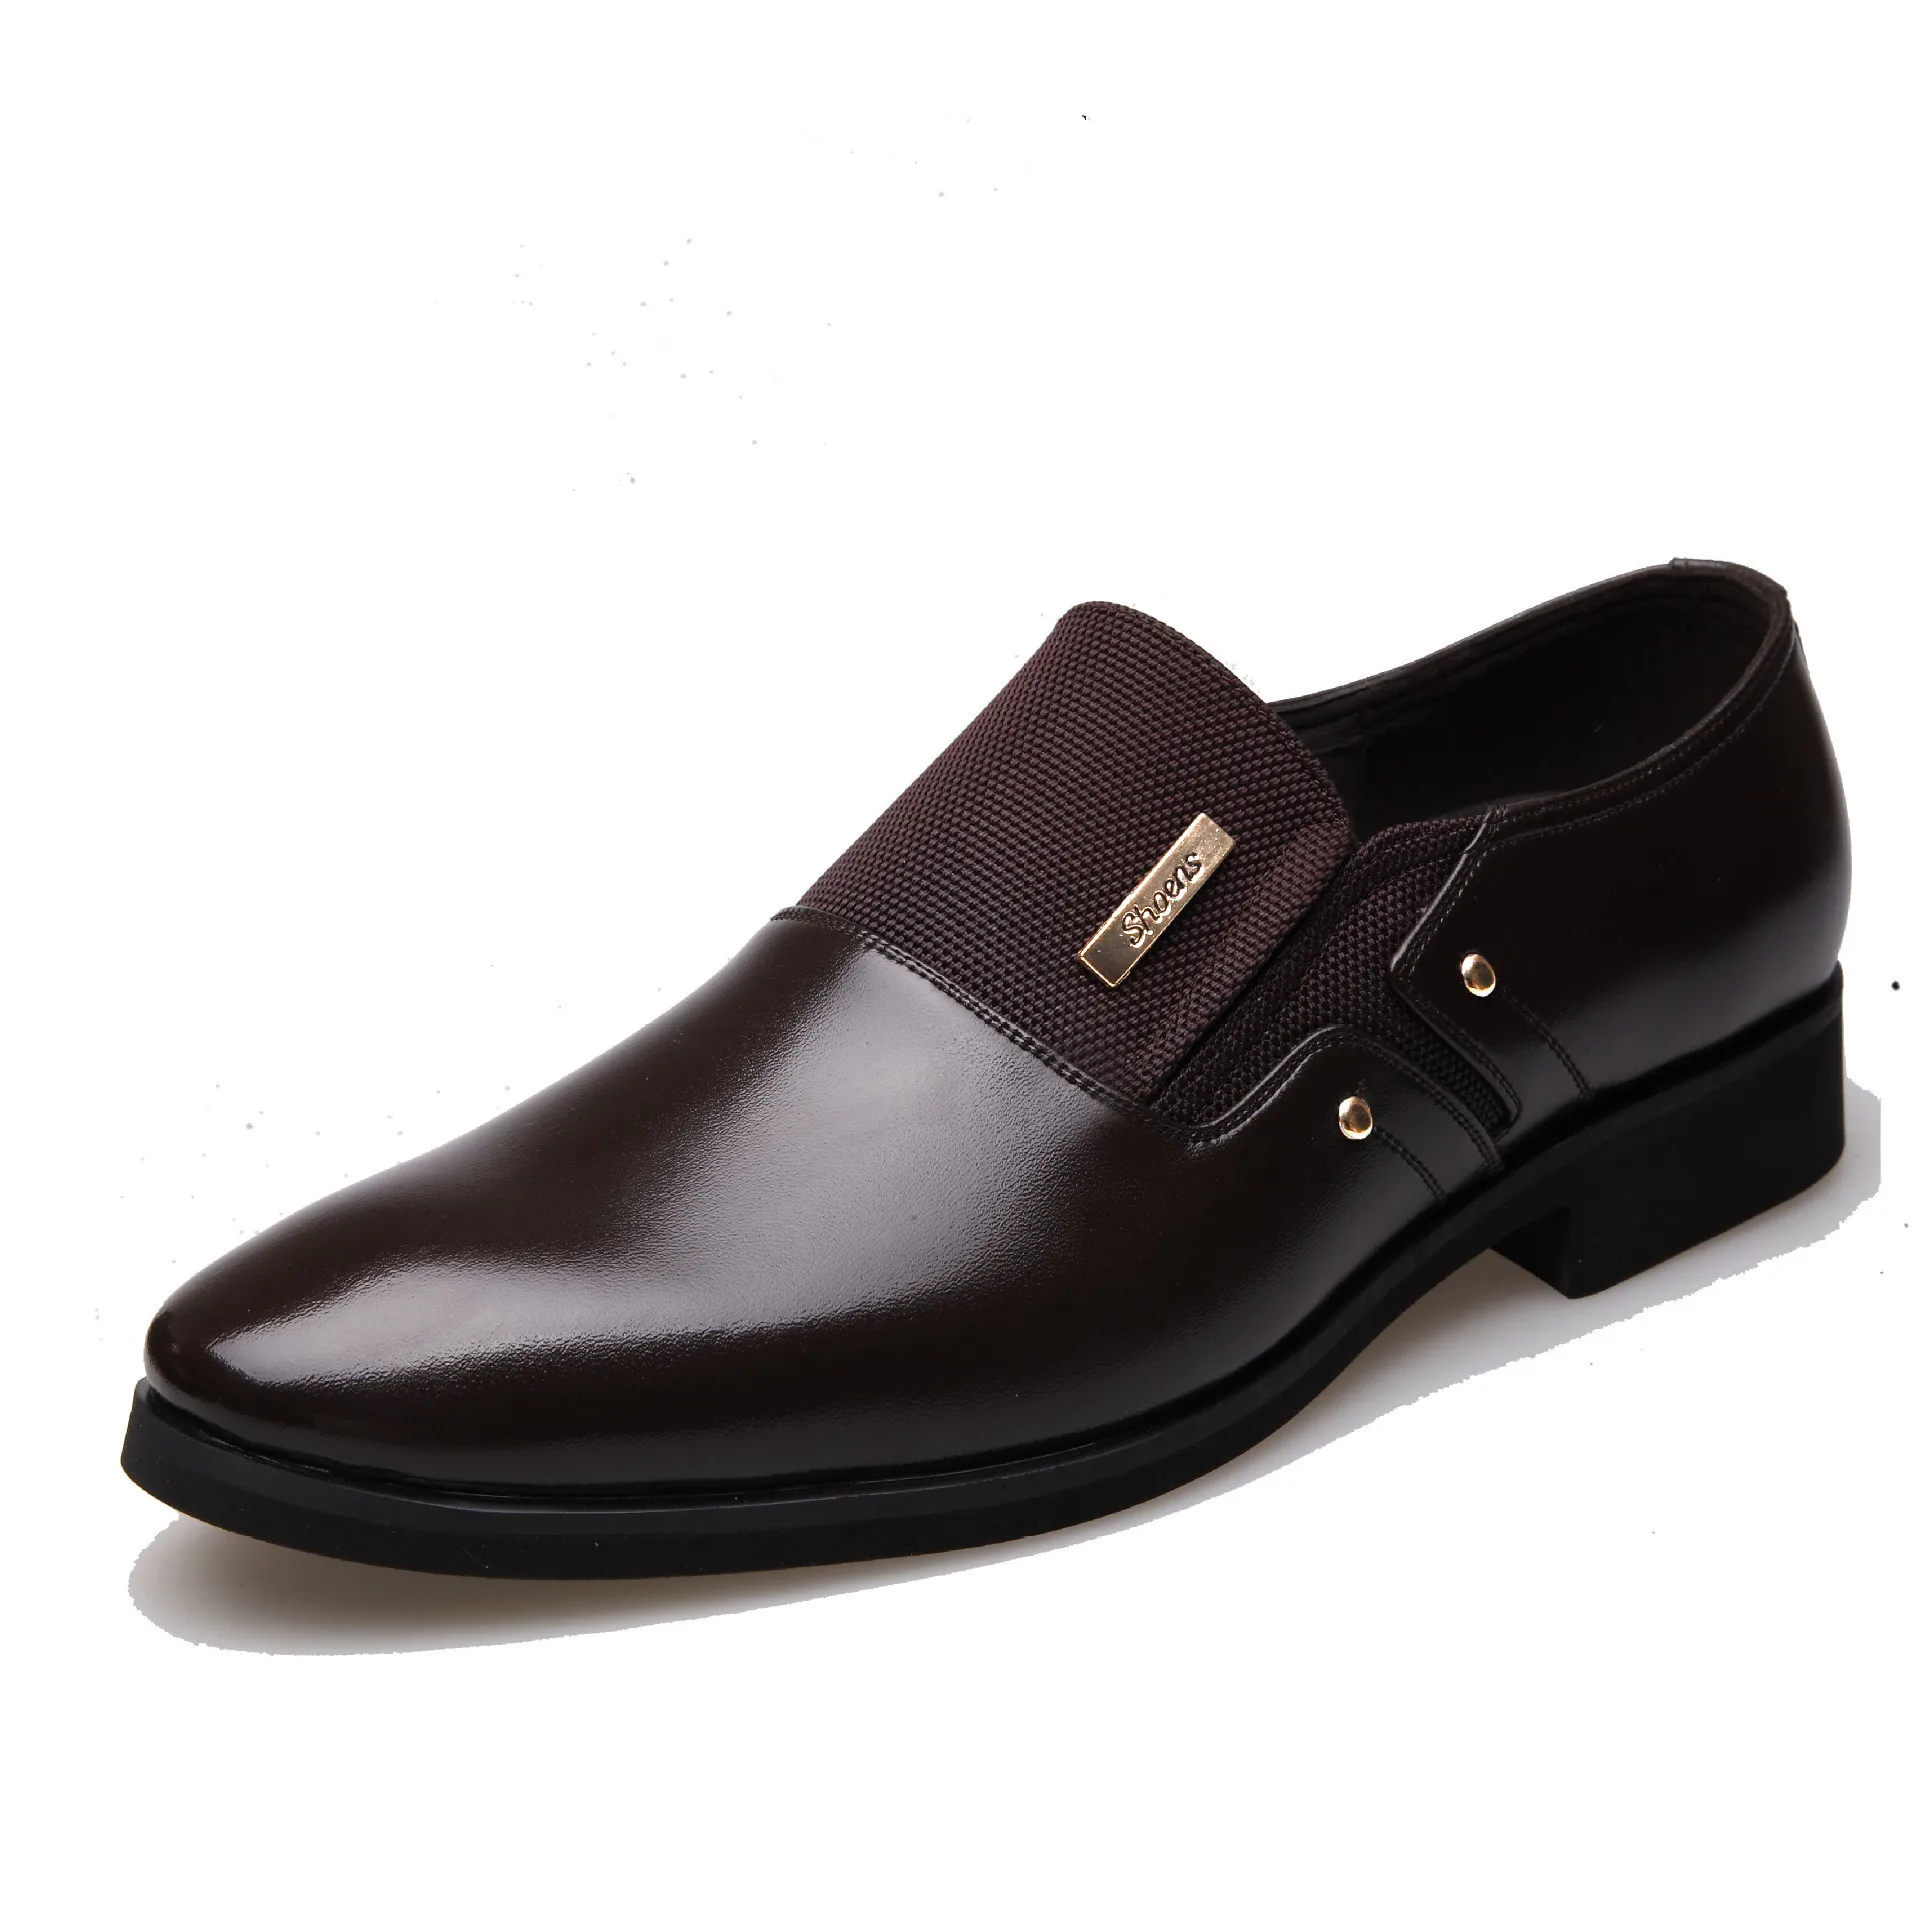 17 новая весенняя мужская обувь, мужская деловая обувь, повседневная кожаная обувь, мужская обувь 454647 - Цвет: Коричневый